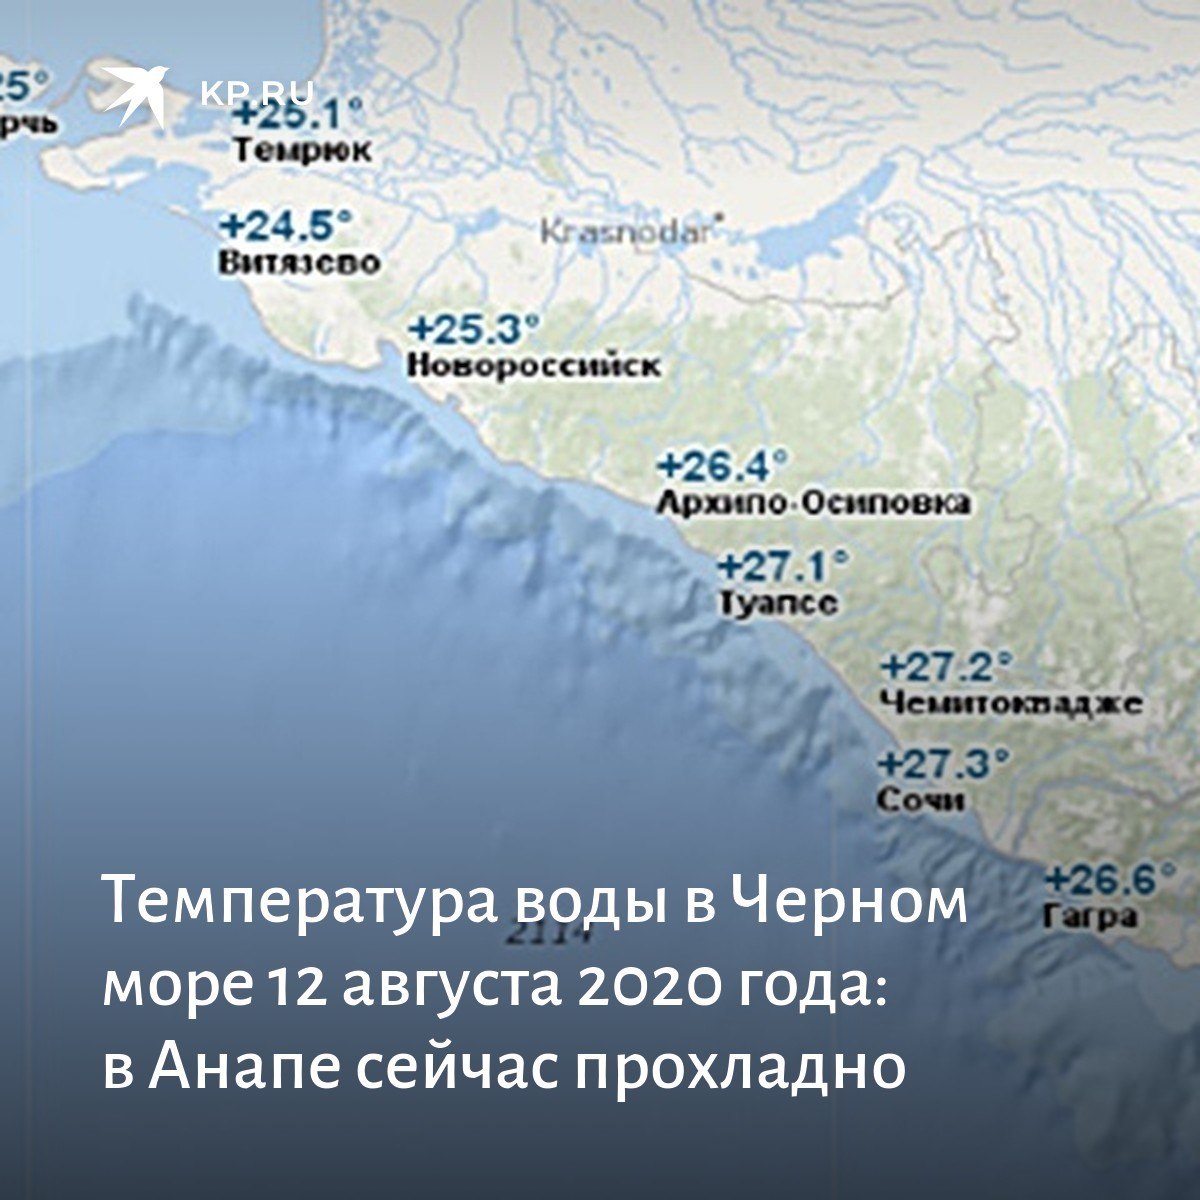 Какая температура в черном море. Побережье черного моря. Температурная карта Черноморского побережья. Побережье черного моря Сочи. Туапсе побережье черного моря.